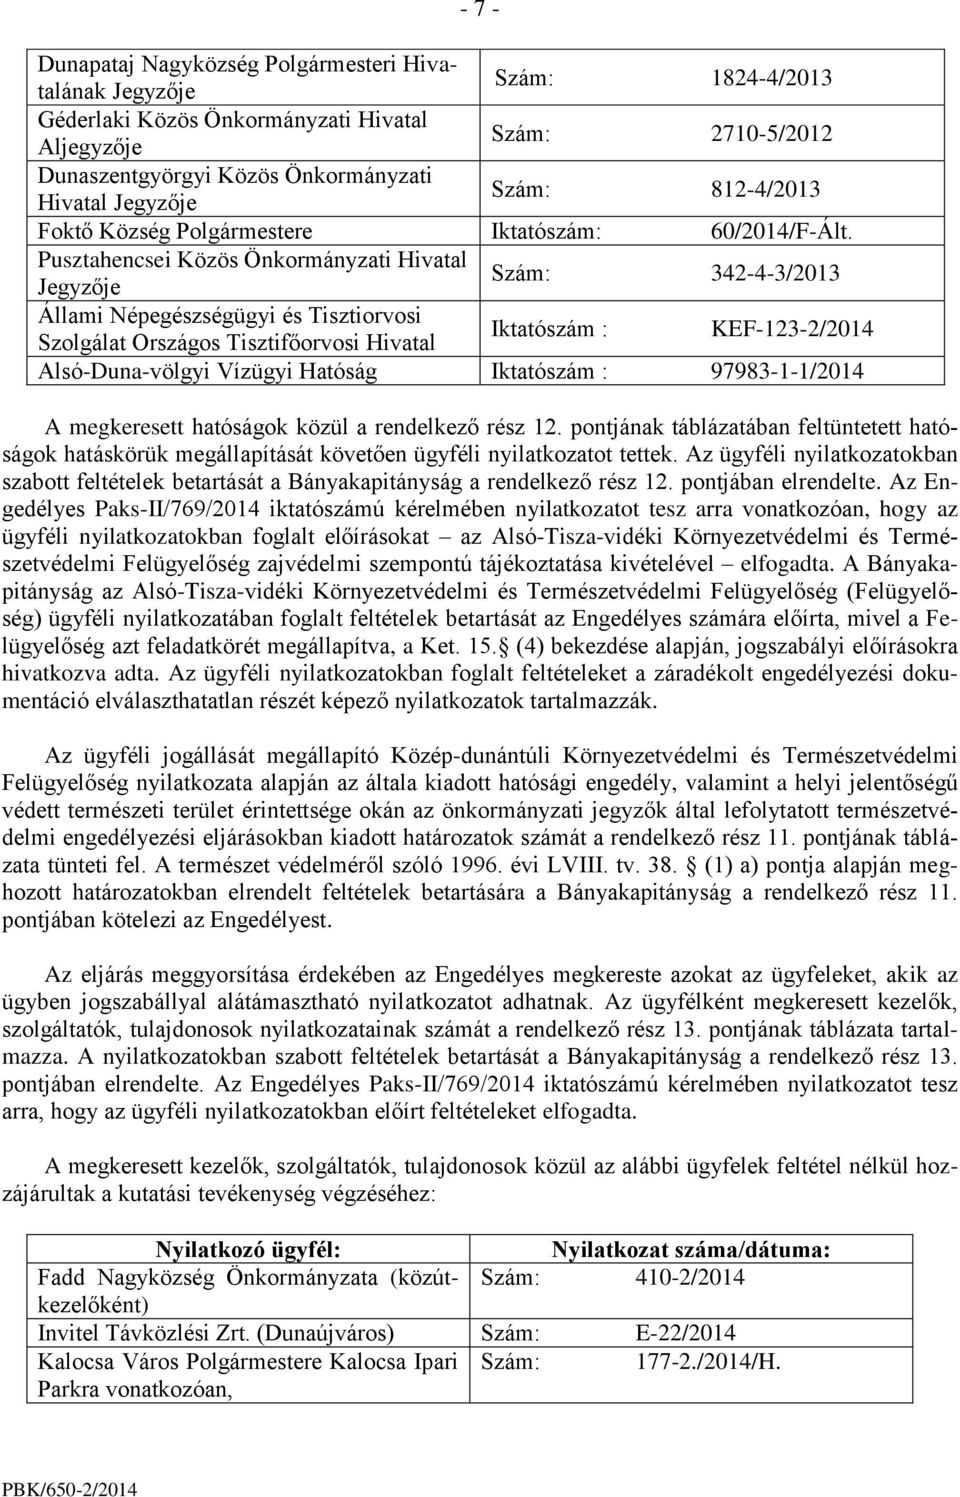 Pusztahencsei Közös Önkormányzati Hivatal Jegyzője Szám: 342-4-3/2013 Állami Népegészségügyi és Tisztiorvosi Szolgálat Országos Tisztifőorvosi Hivatal Iktatószám : KEF-123-2/2014 Alsó-Duna-völgyi